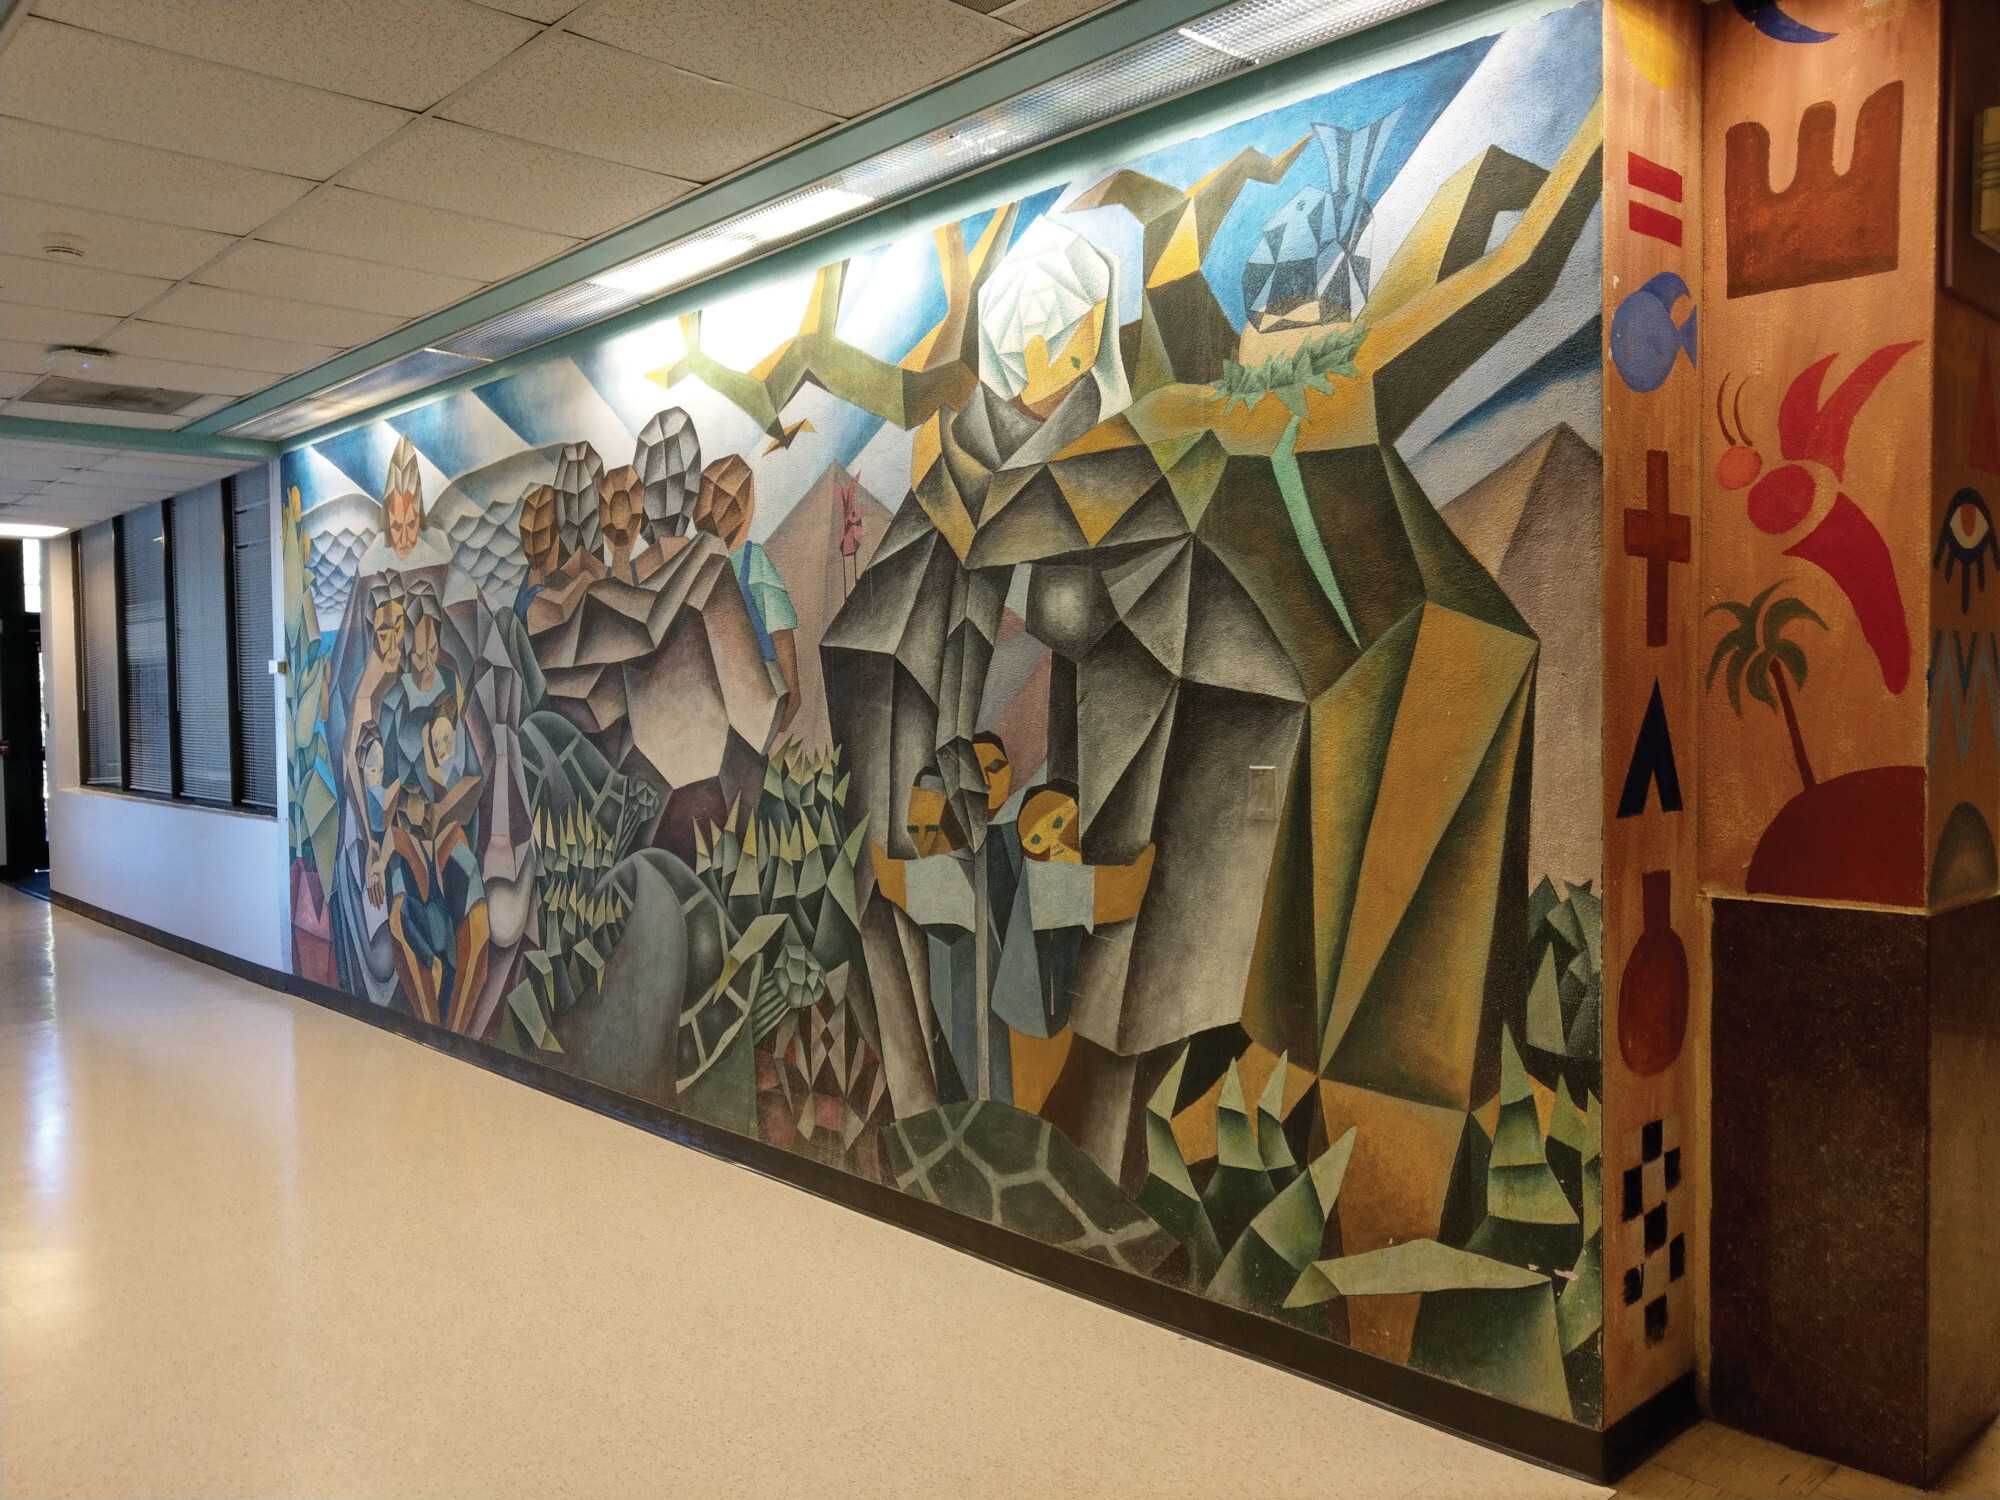 Image of wall mural at Texas Southern University